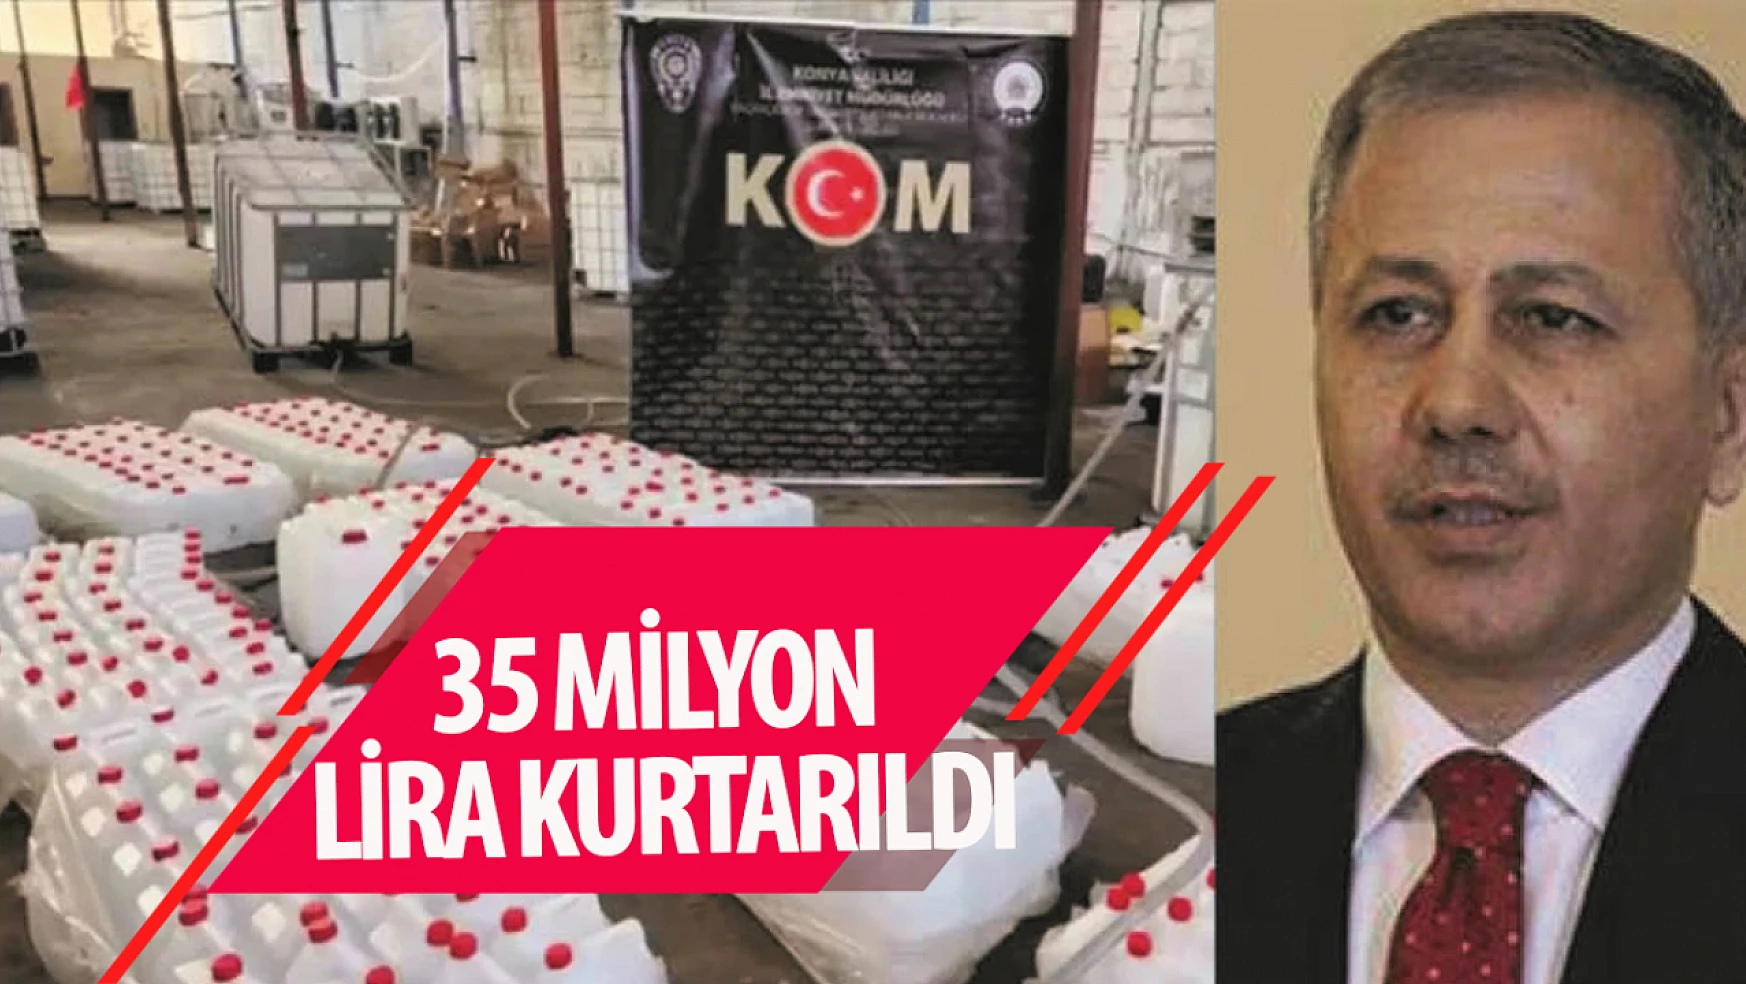 Konyalı bakan açıkladı! Aralarında Konya'da var! 35 milyon liralık vergi kaybının önüne geçildi!